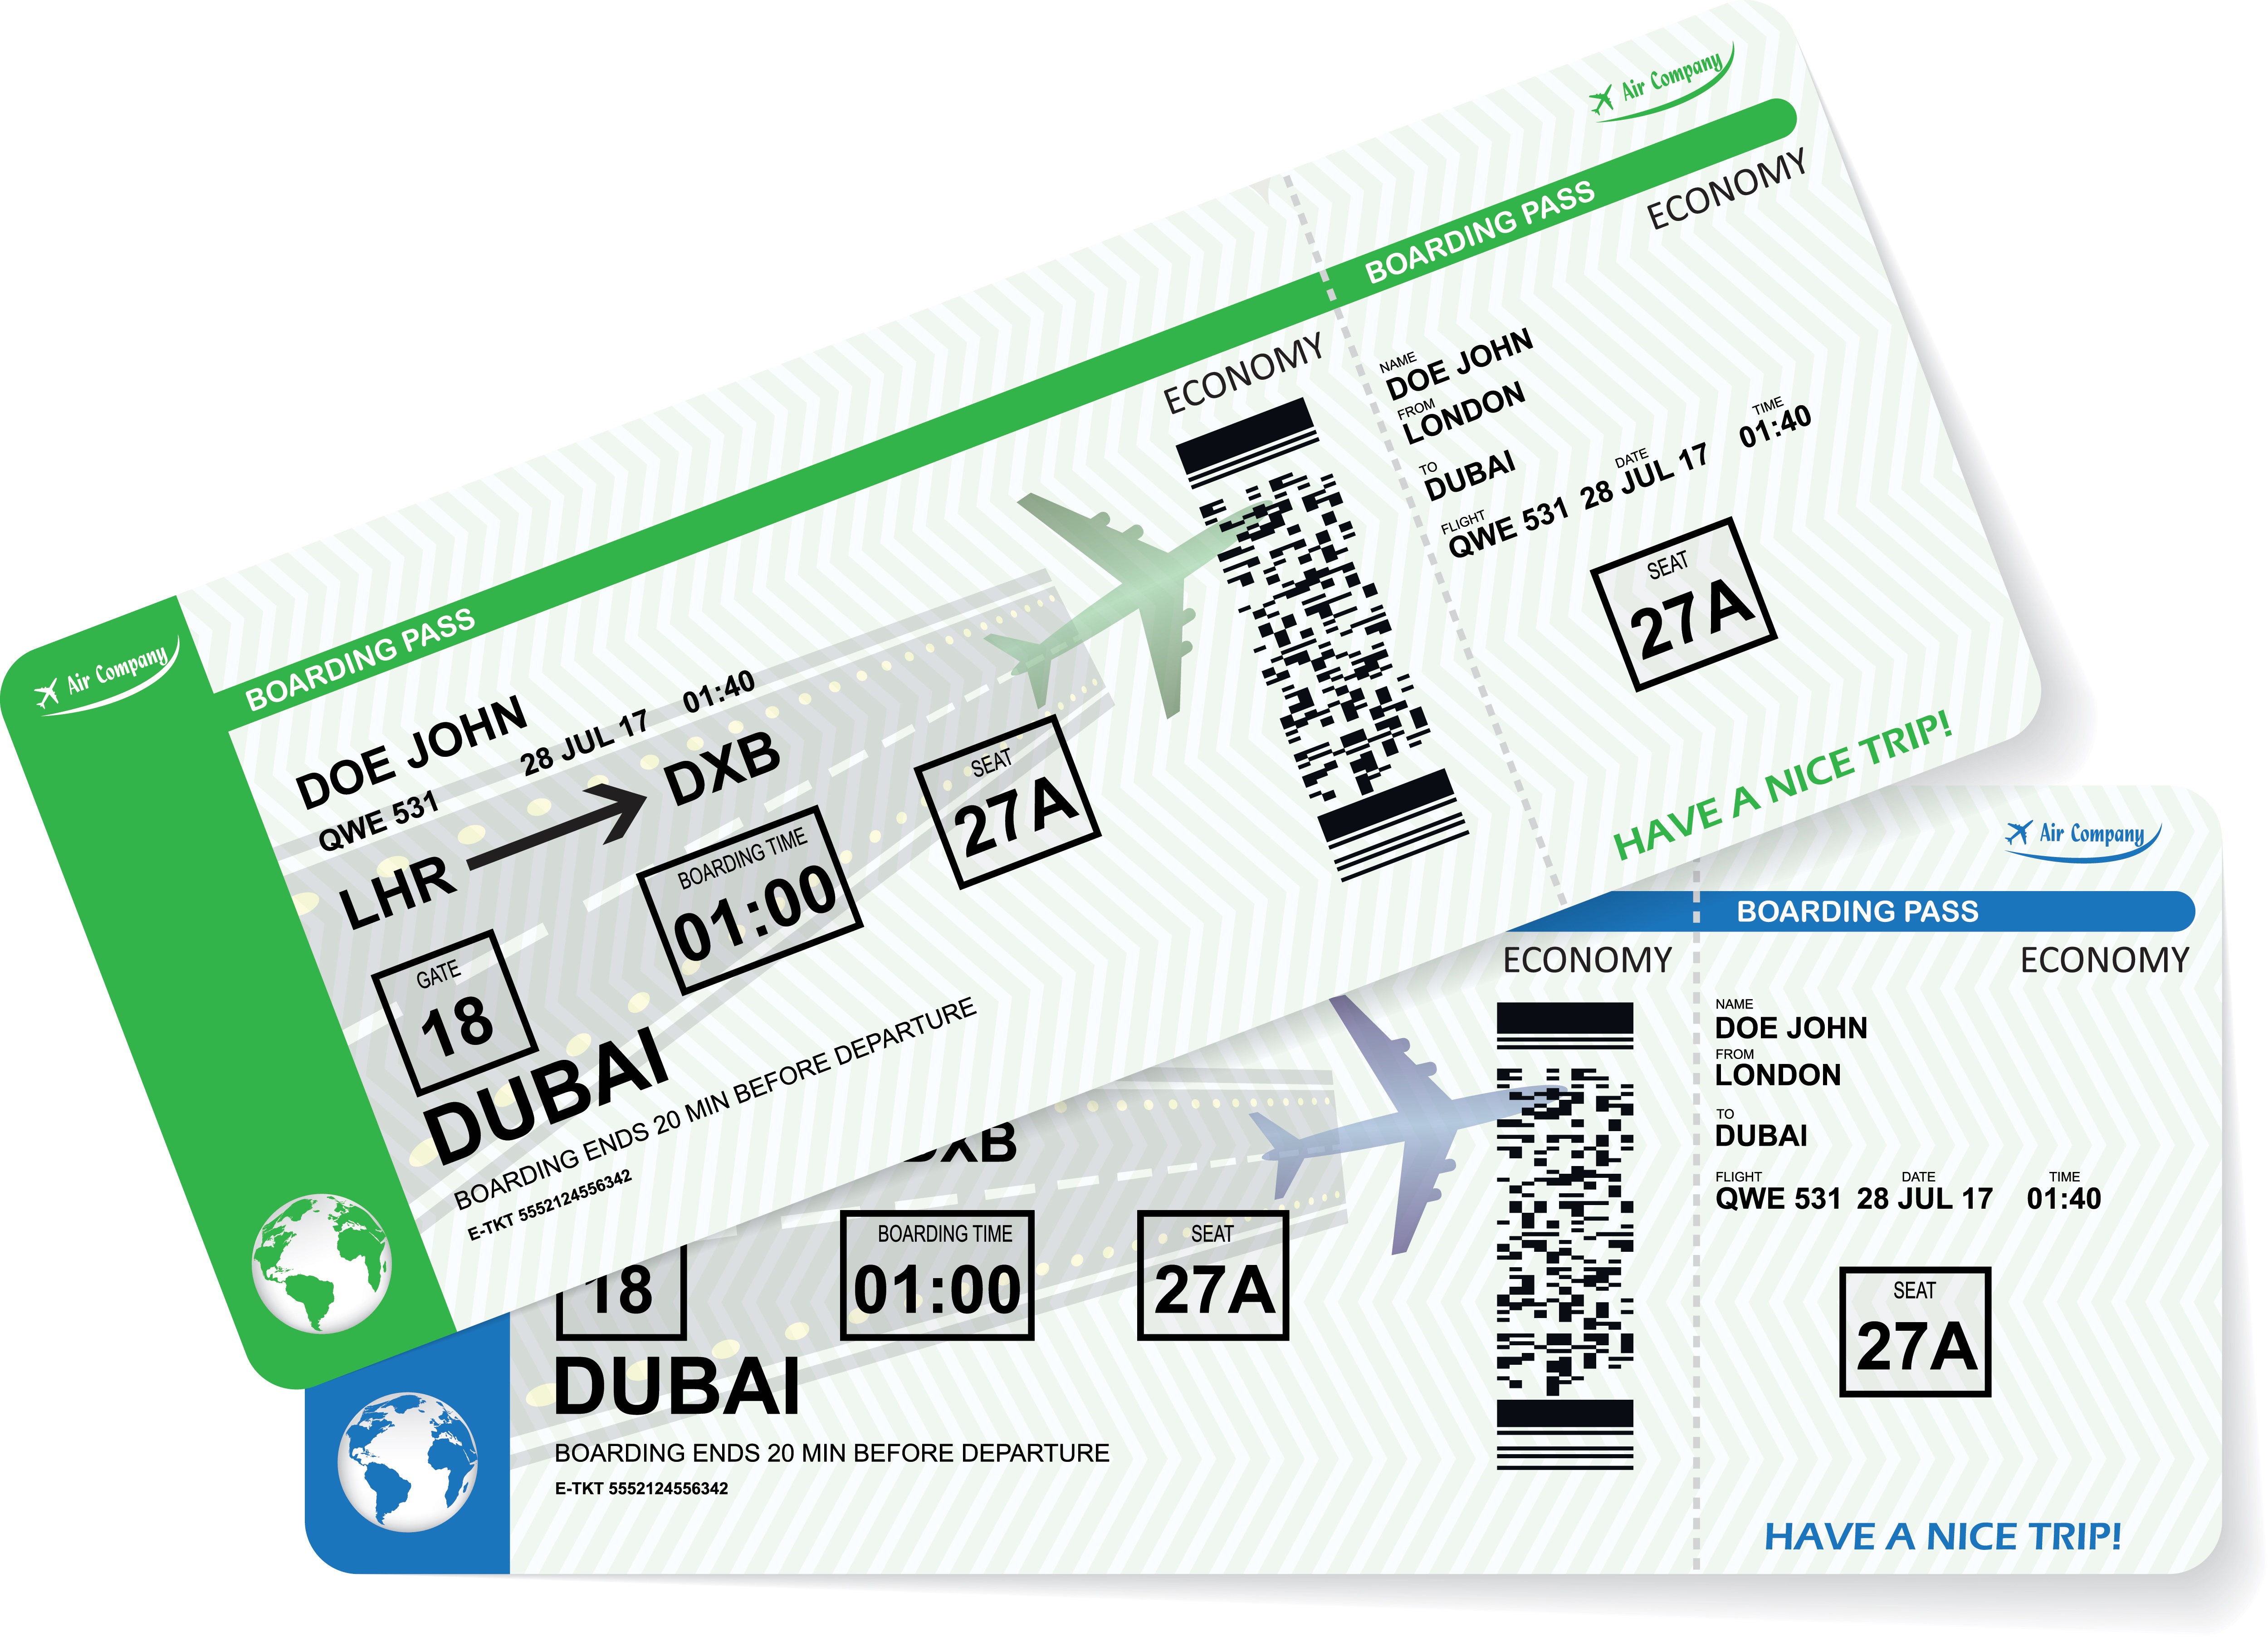 Er du klar over at boardingkort kan brukes til hacking og ID-tyveri?